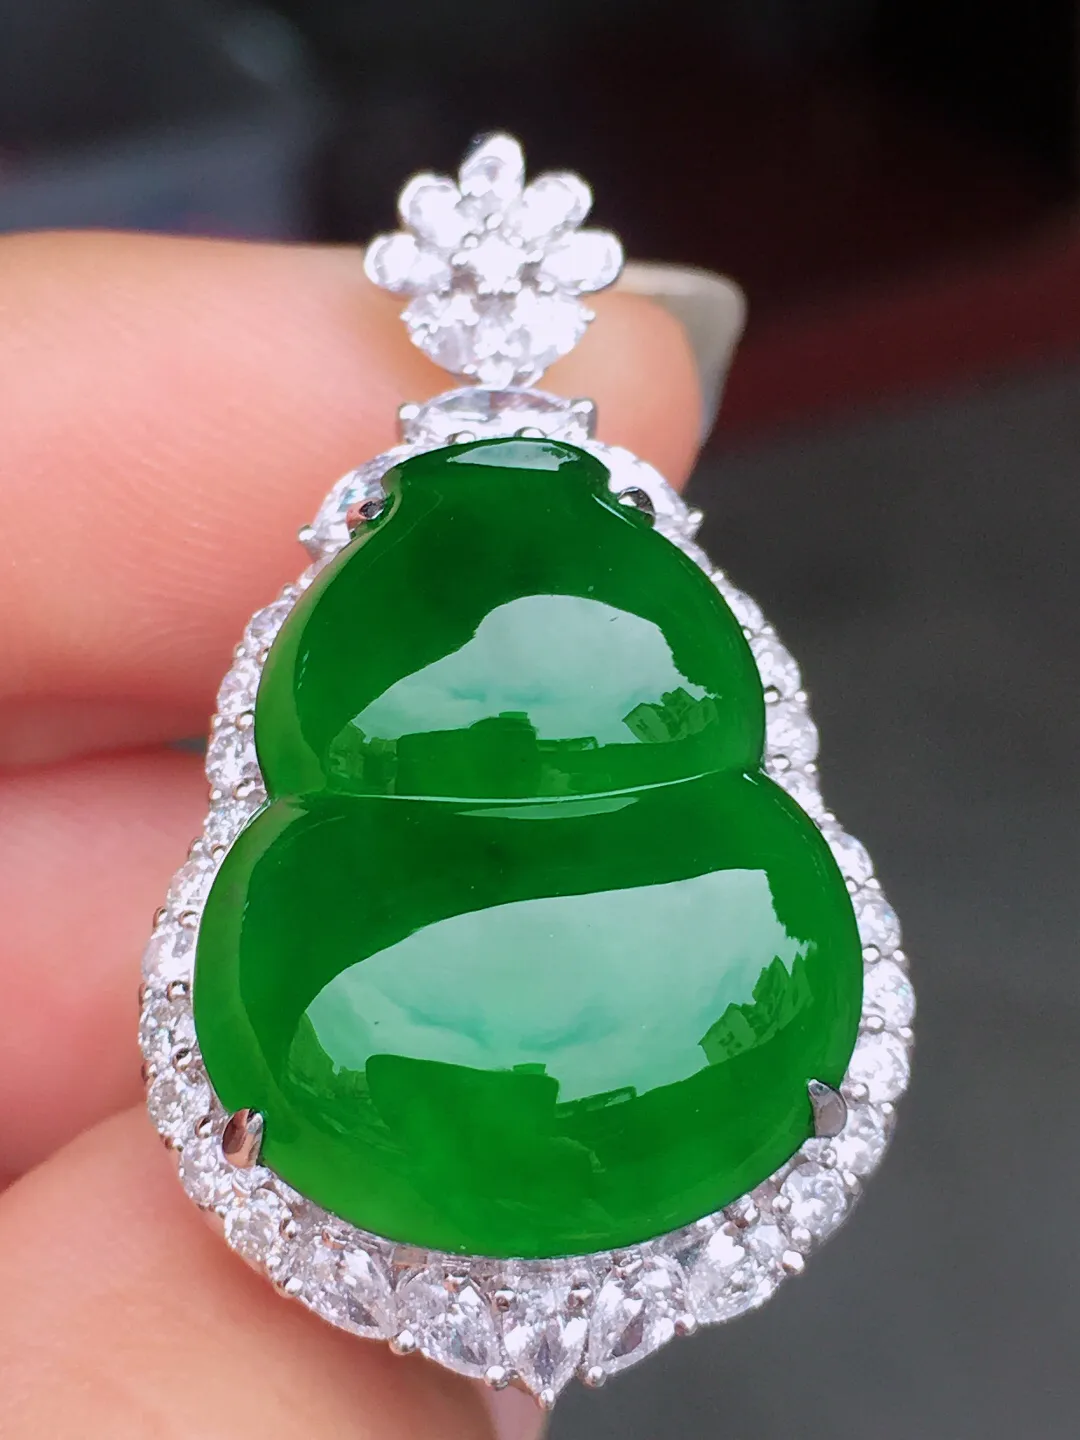 超好看的一枚绿大葫芦戒指/吊坠两用款，种水细腻莹润，
光感十足，器型很饱满，优
雅迷人～18k金豪华